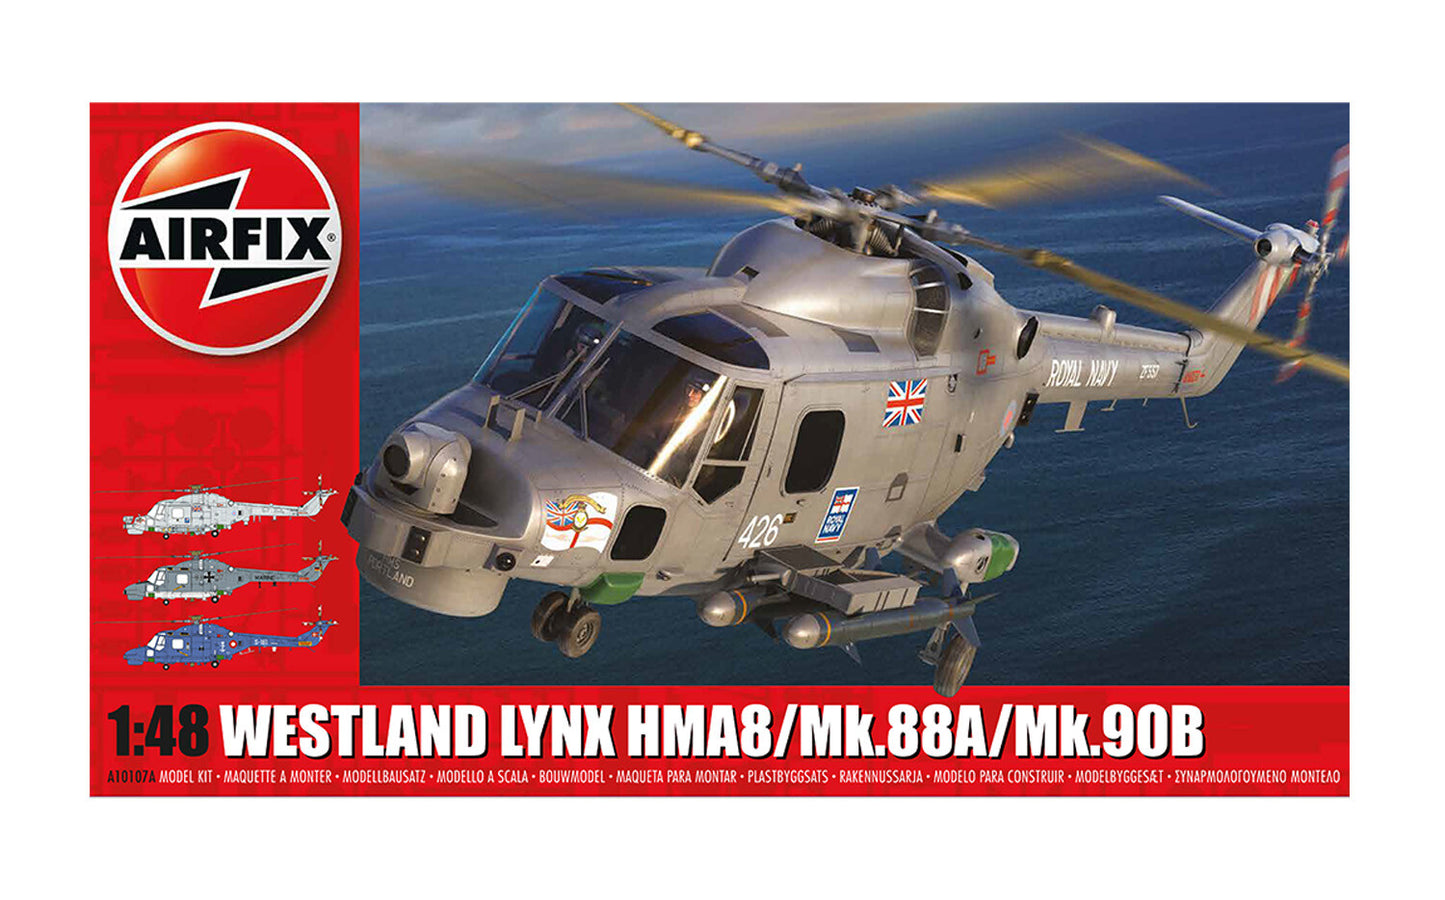 Airfix 1/48th scale Westland Lynx HMA8/Mk.88A/Mk.90B